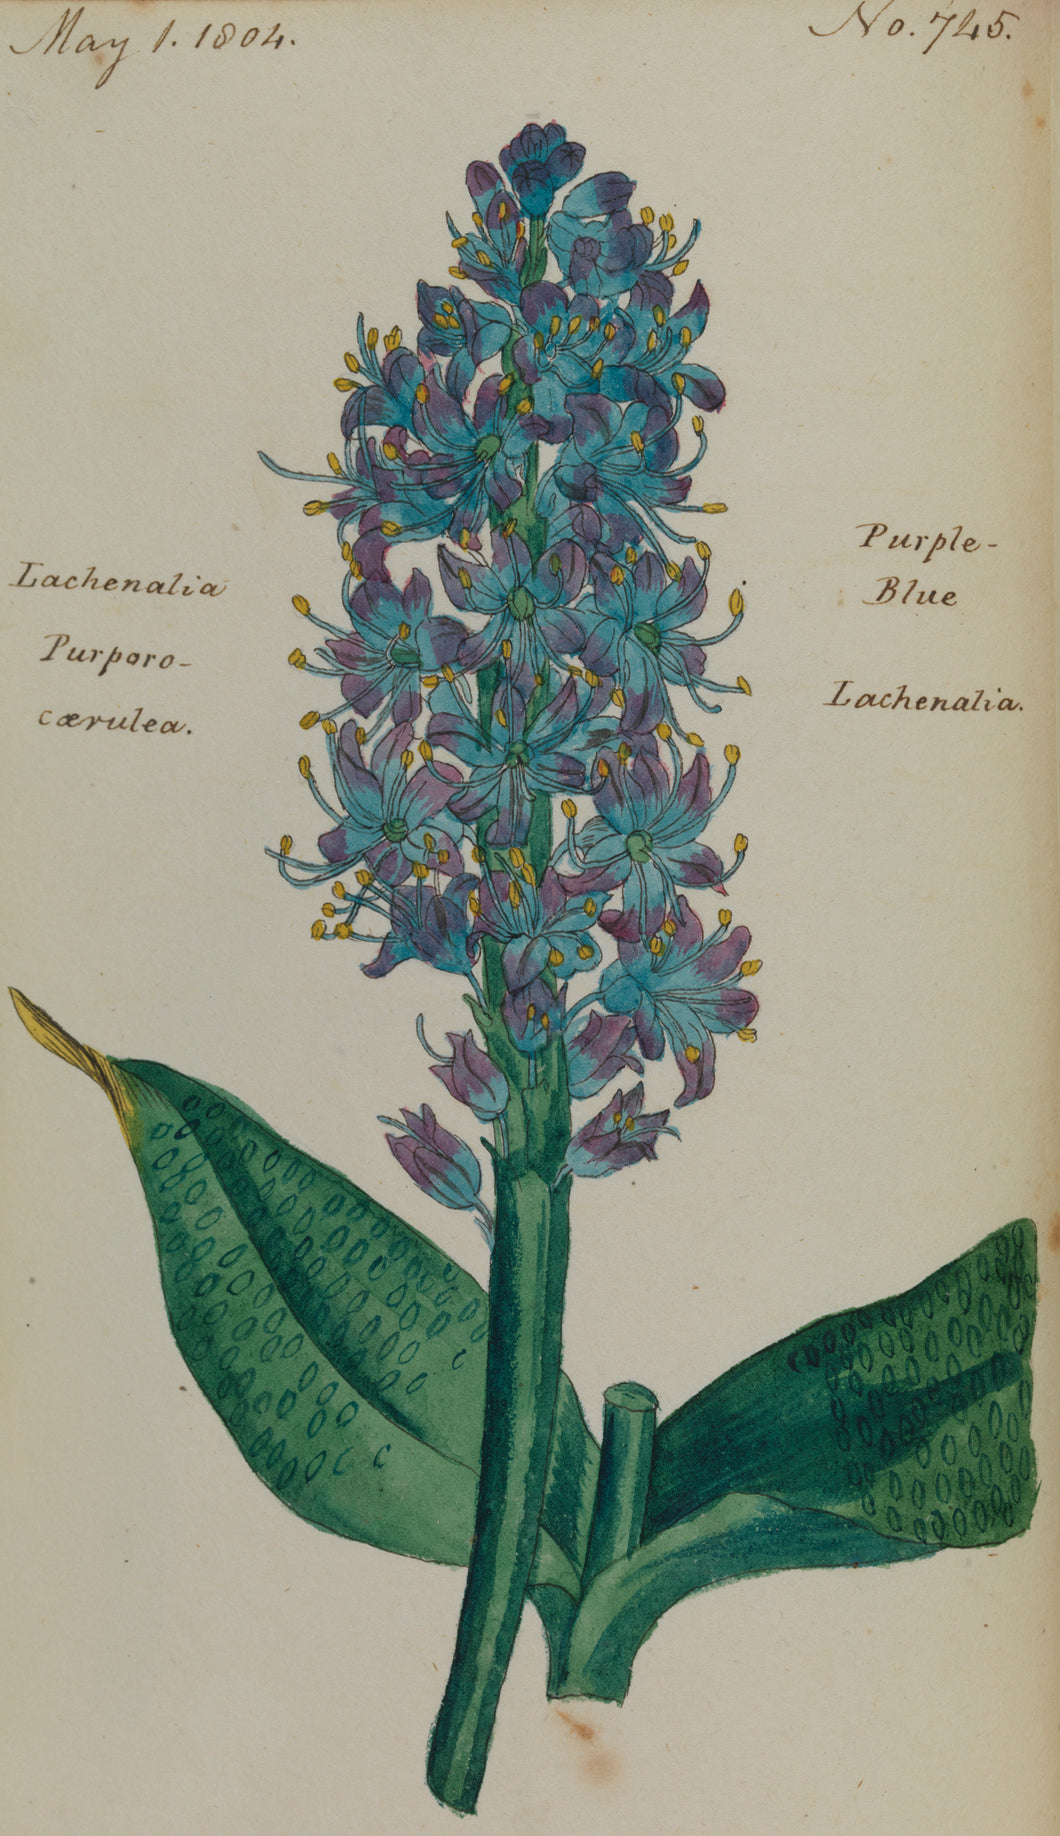 Purple-blue Lachenalia